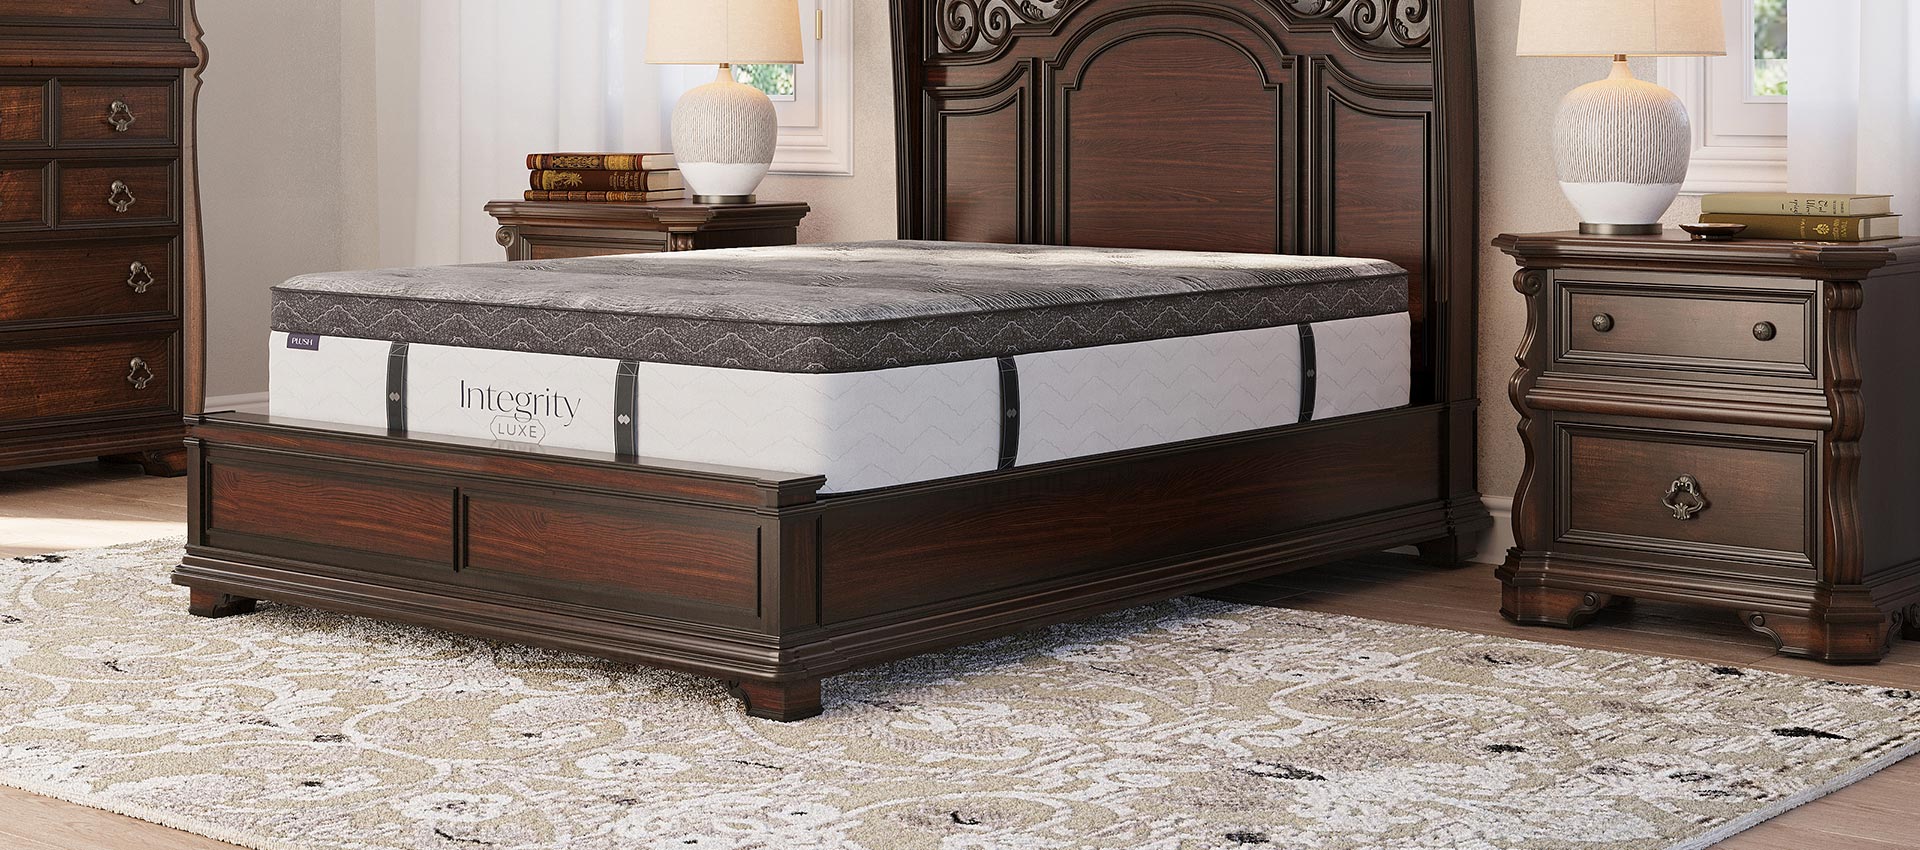 integrity luxe mattress